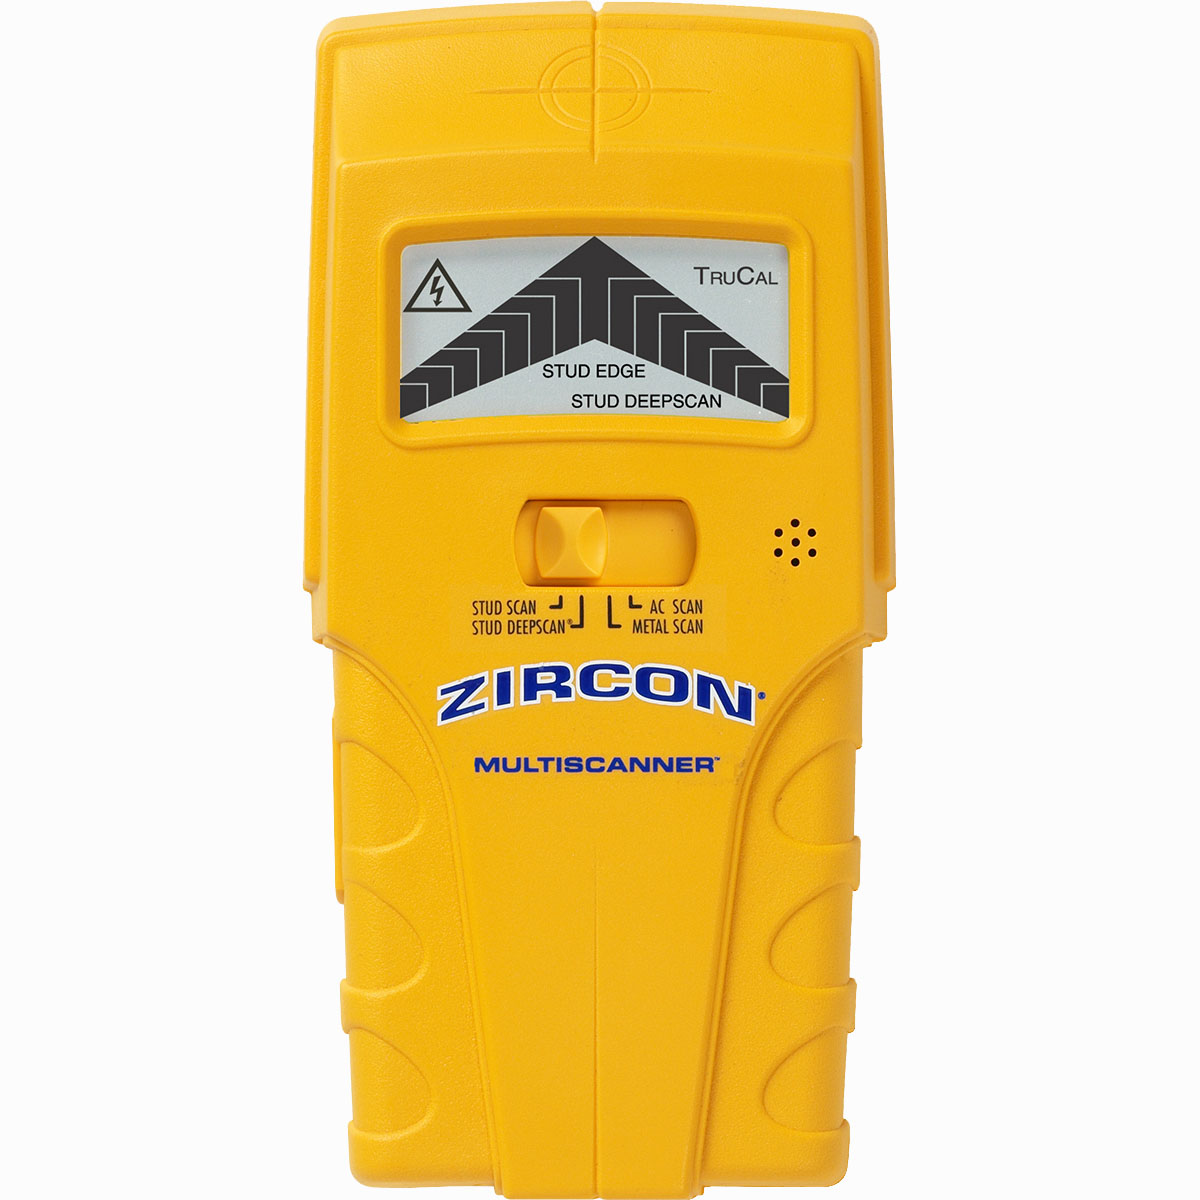 Zircon MultiScanner